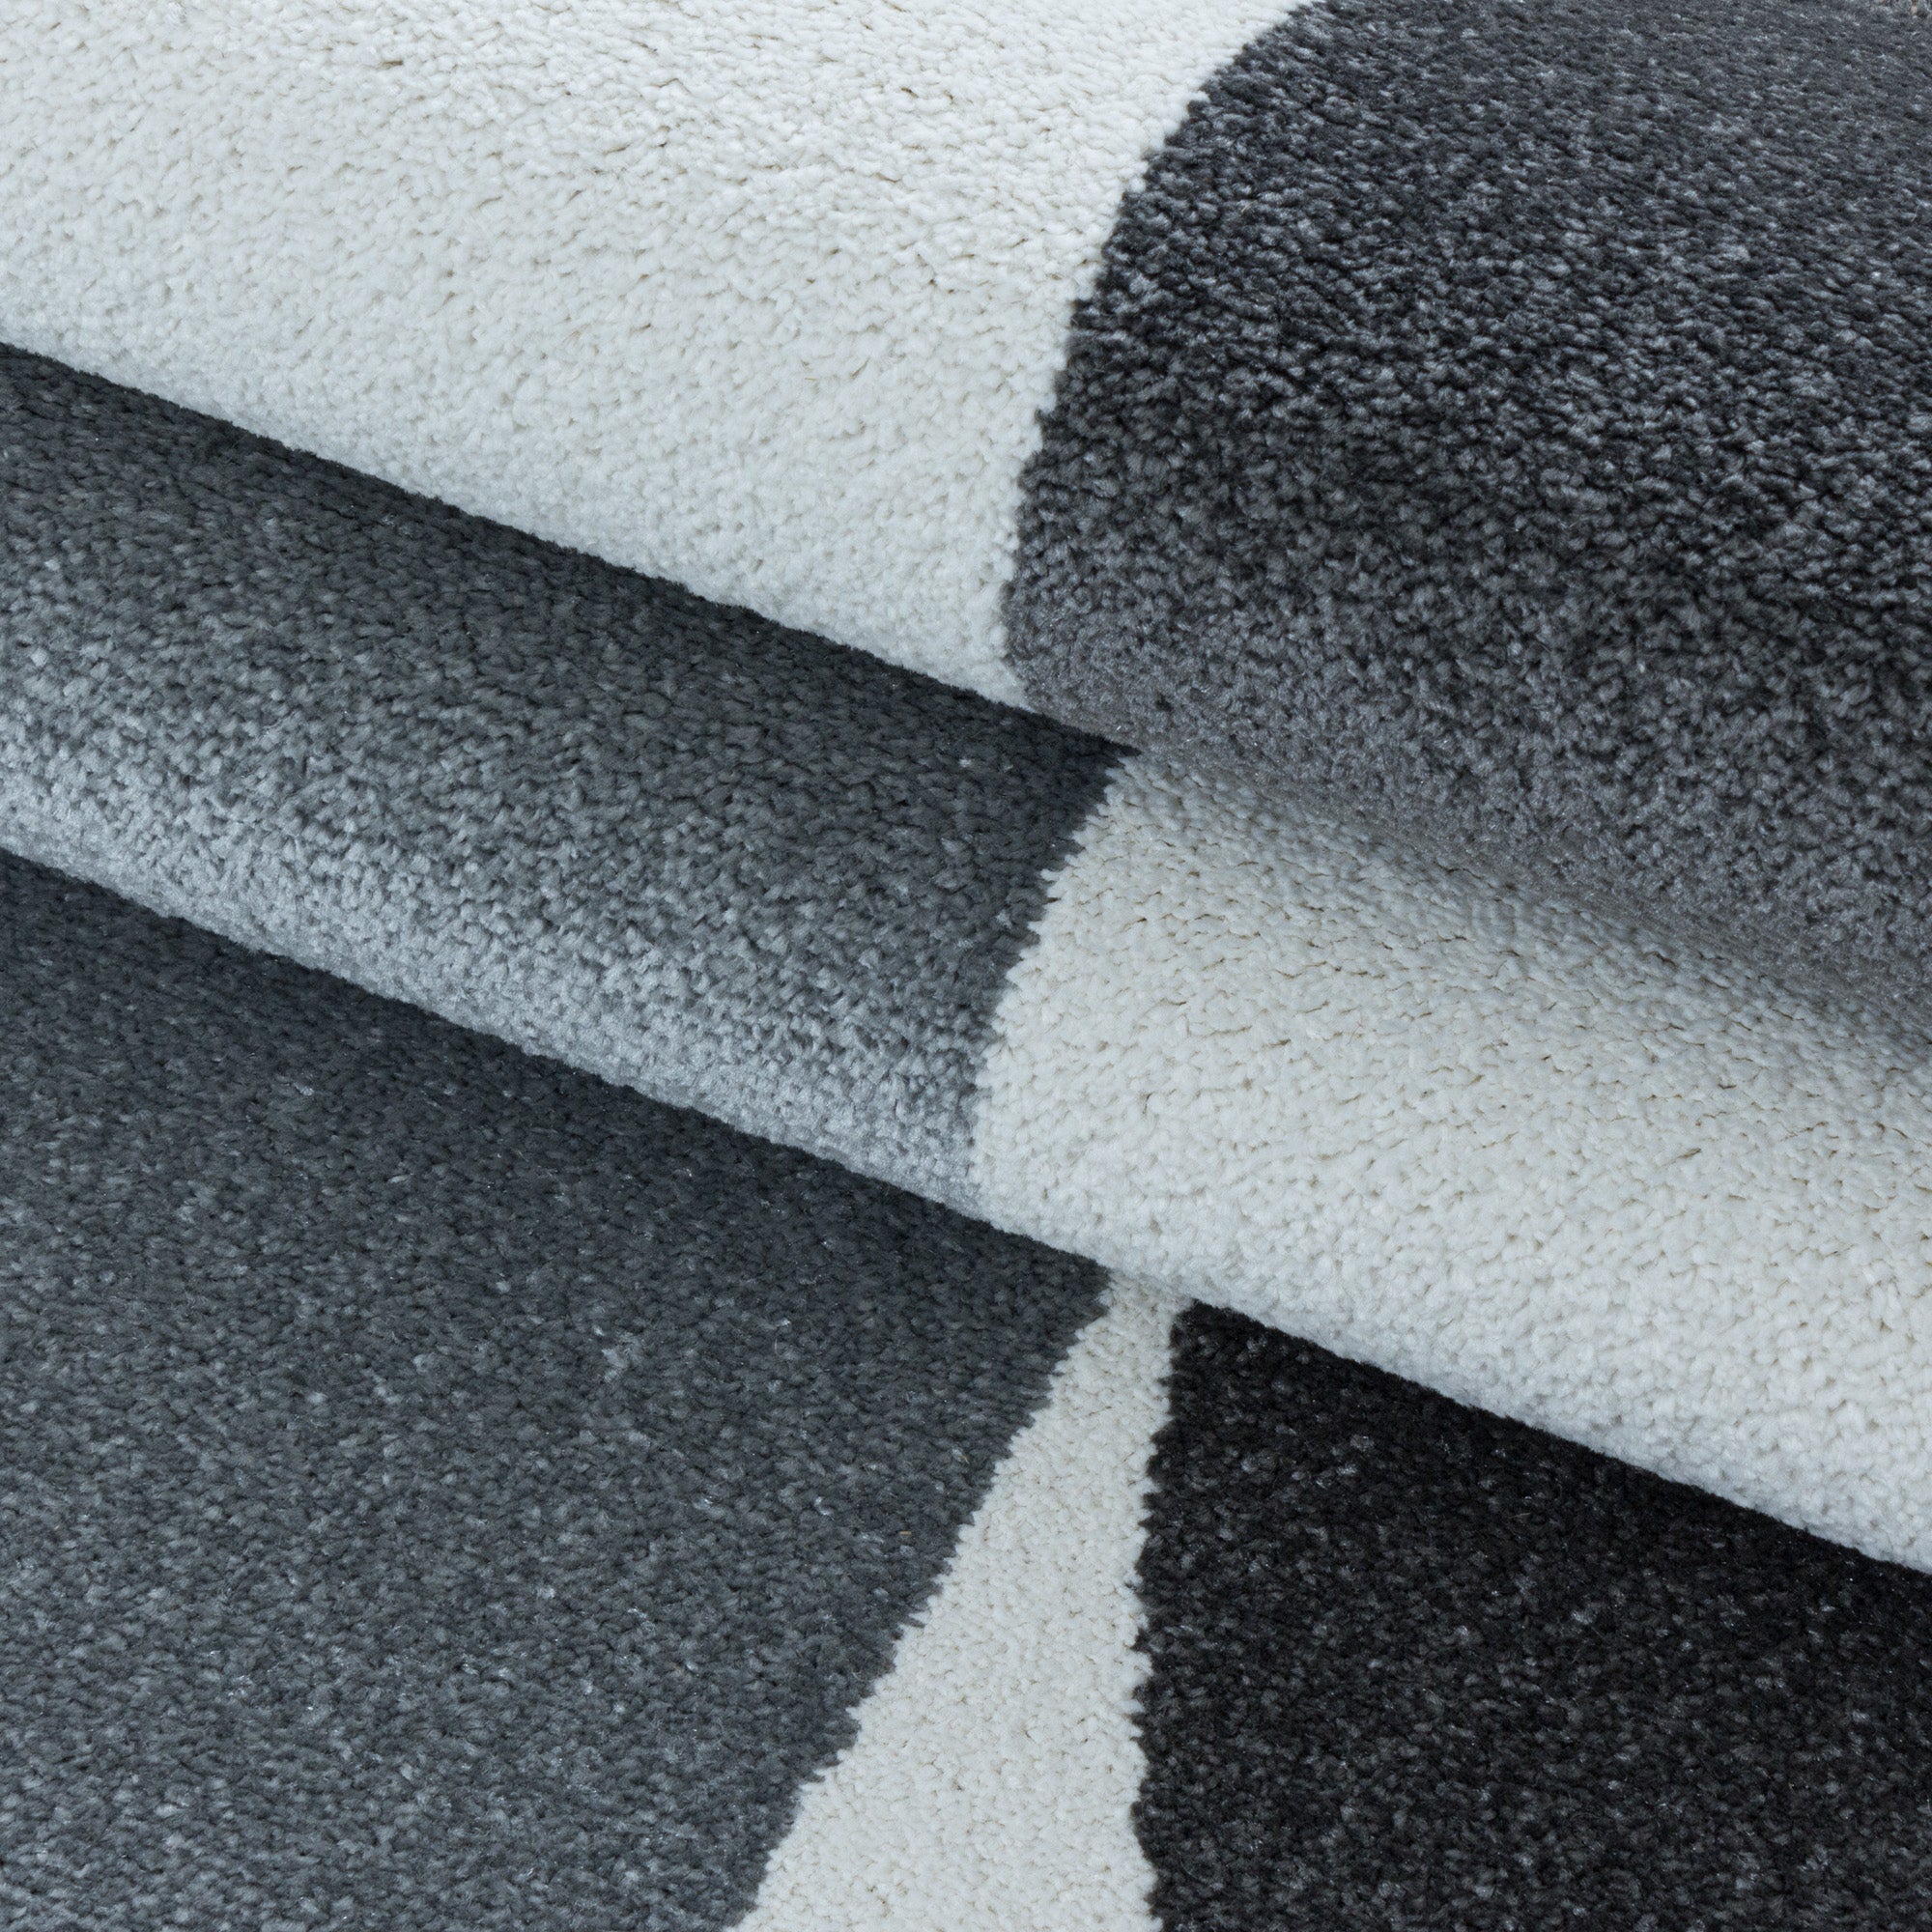 Kurzflor Design Teppich Wohnzimmerteppich Zipcode Muster Abstrakt Soft Flor Grau